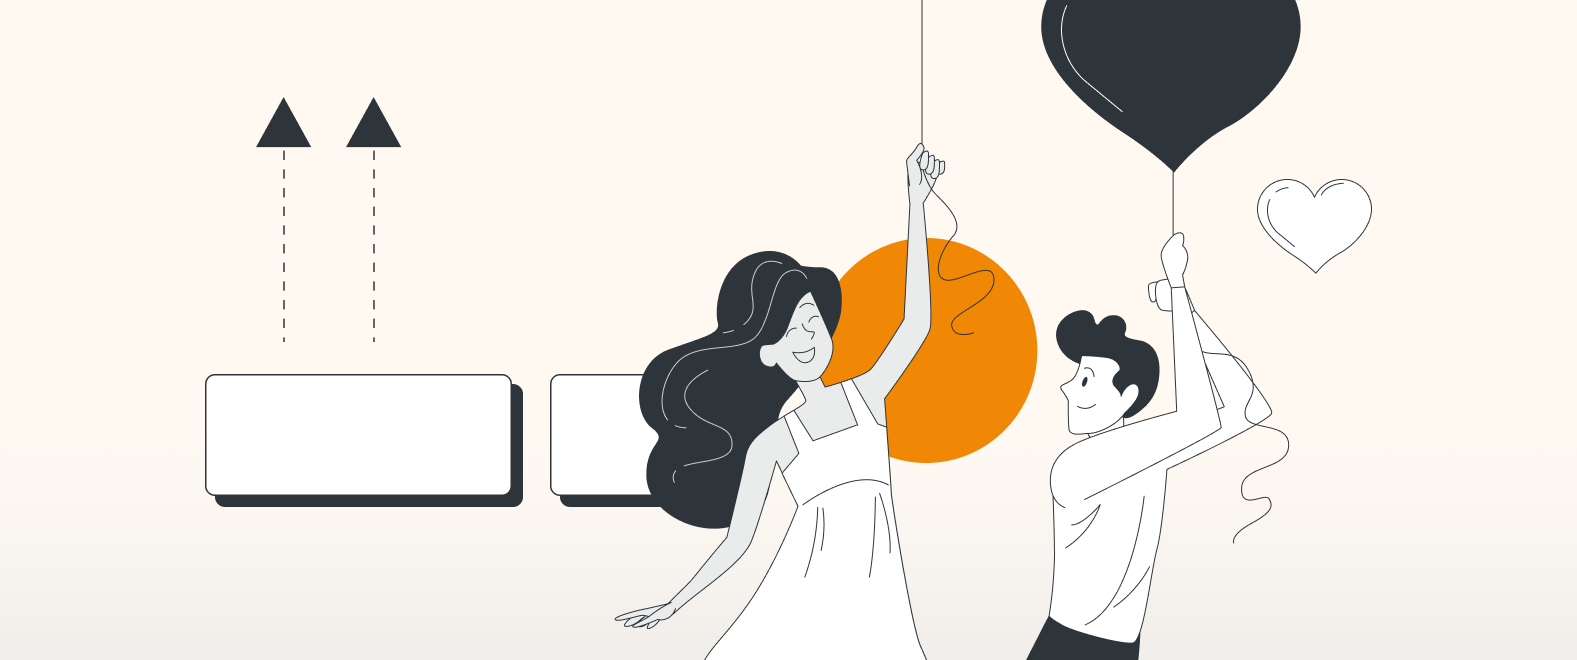 Eine Grafik, die zwei gezeichnete Personen, eine Frau und einen Mann, zeigt. Beide halten sich jeweils an einer Schnur fest, die an einem herzförmigen Luftballon befestigt ist.